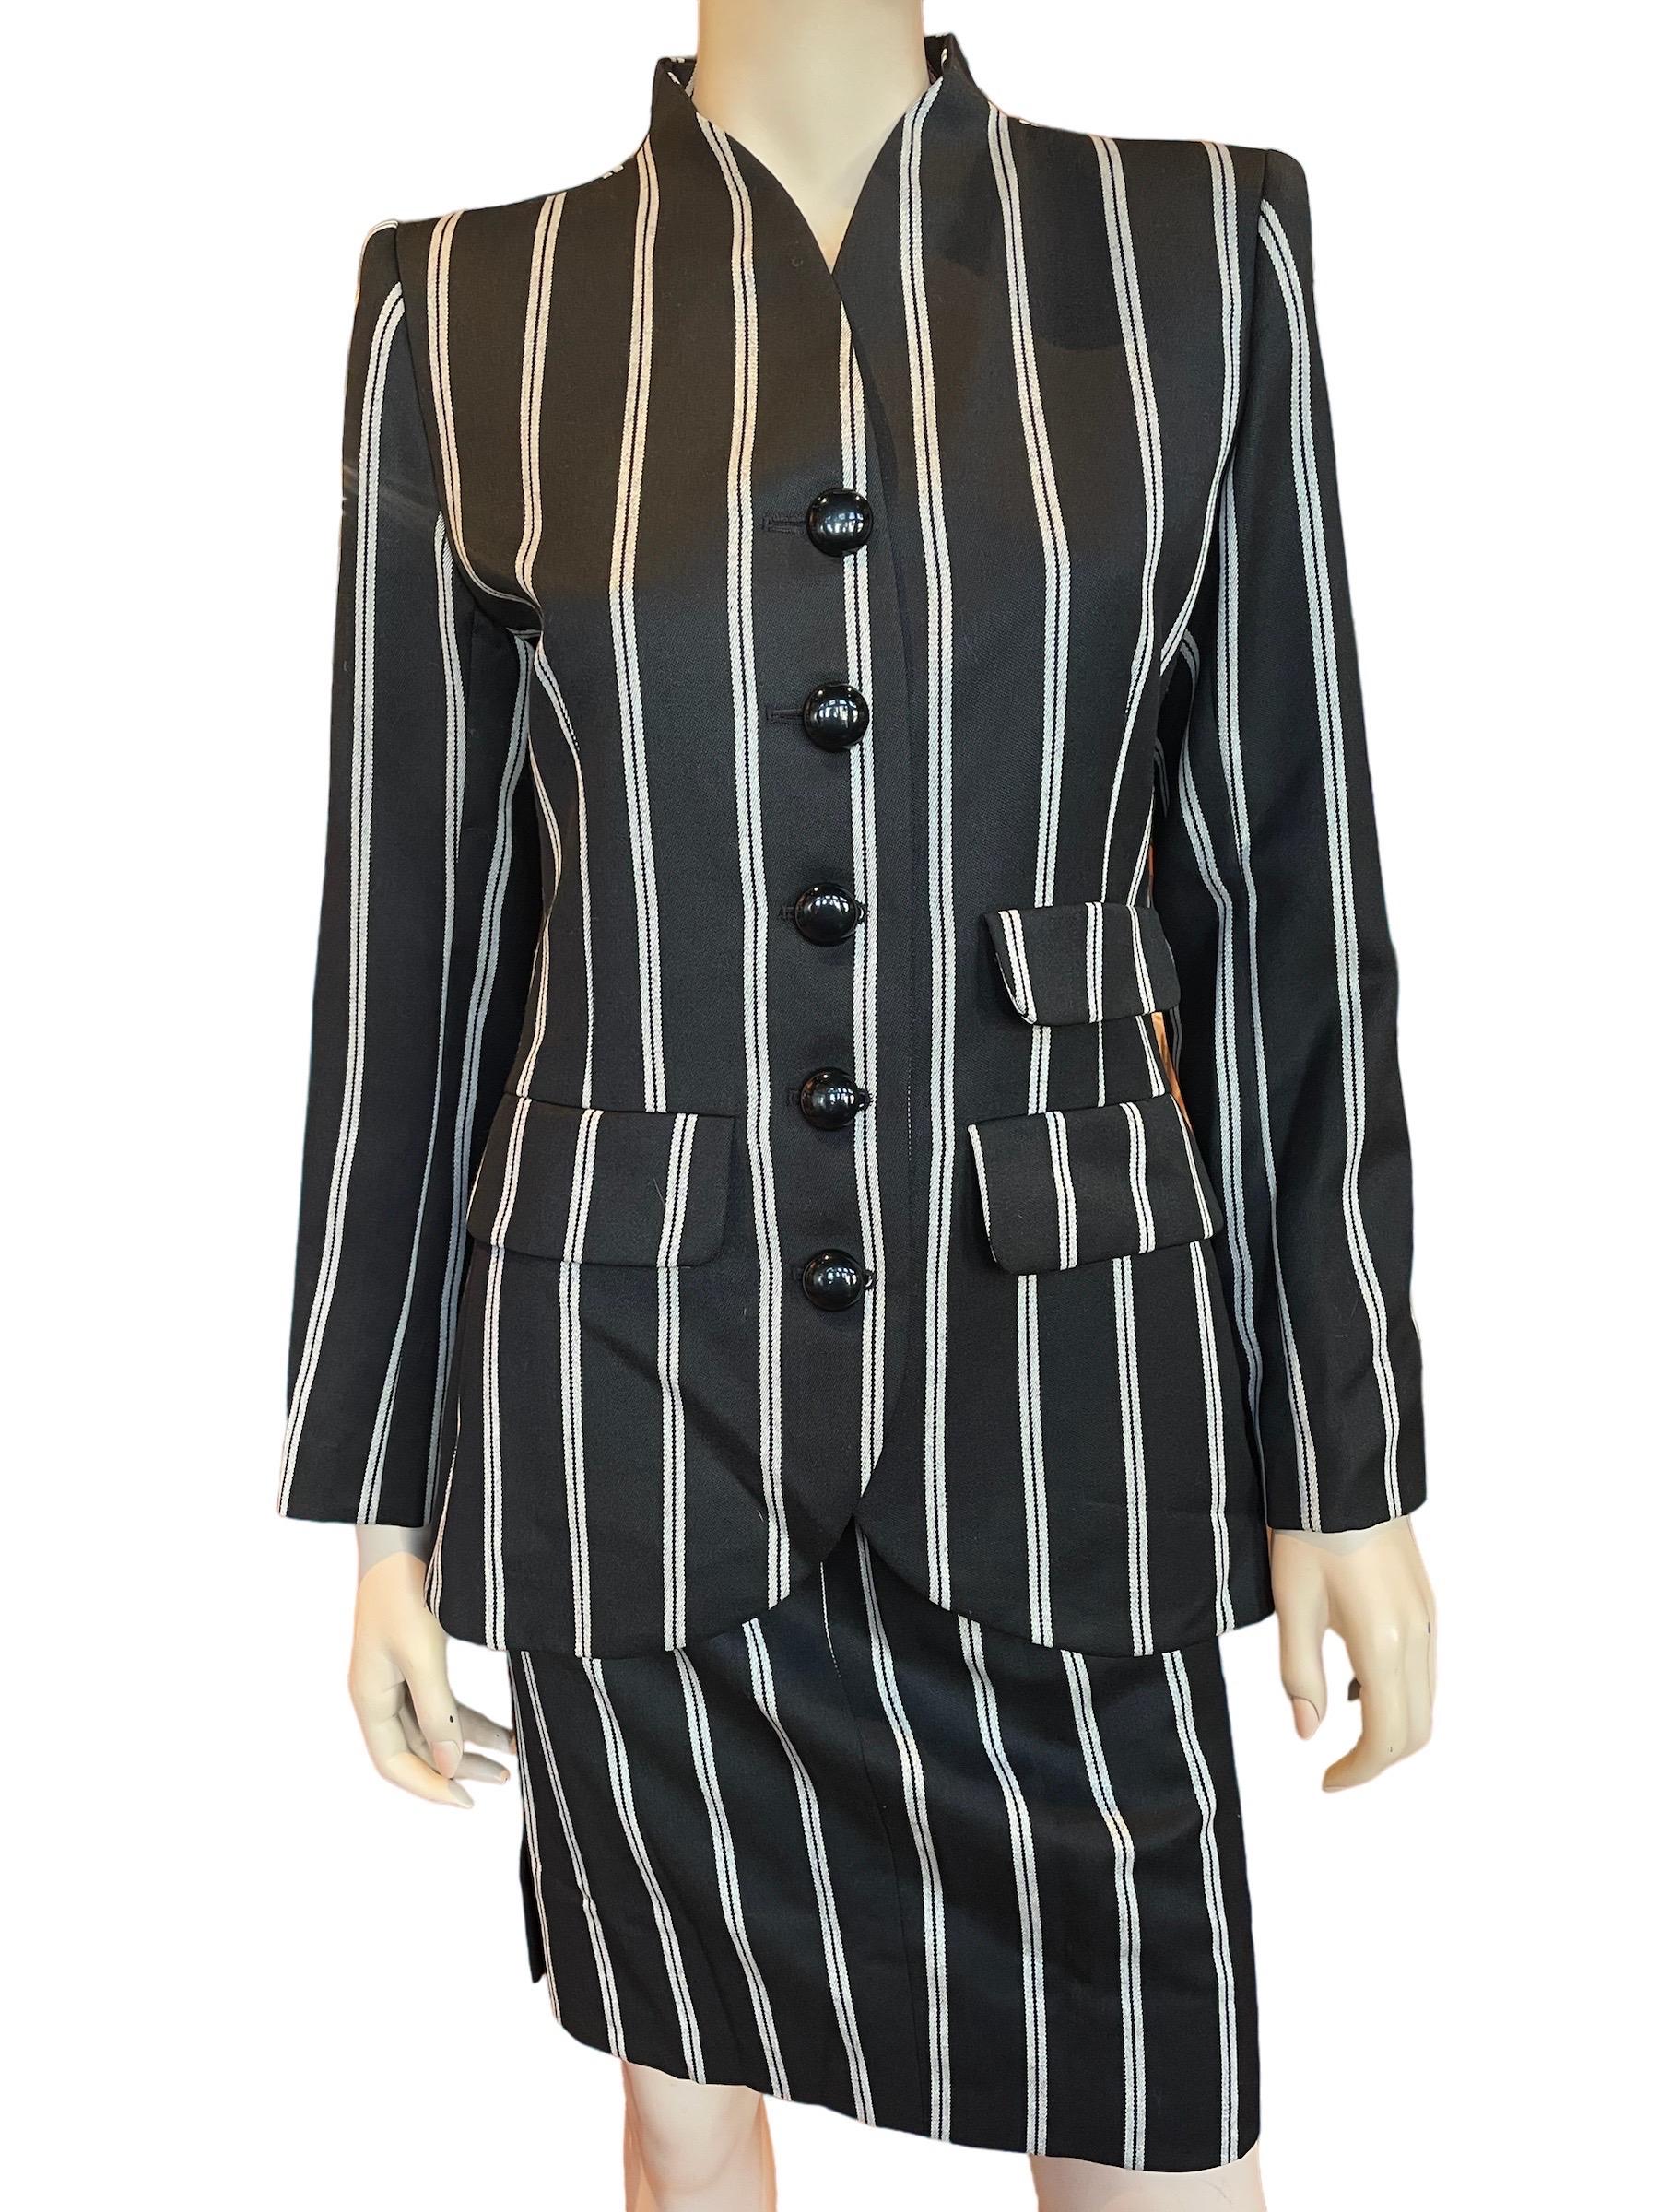 Women's or Men's 1980s Yves Saint Laurent Pin Striped Blazer and Skirt 